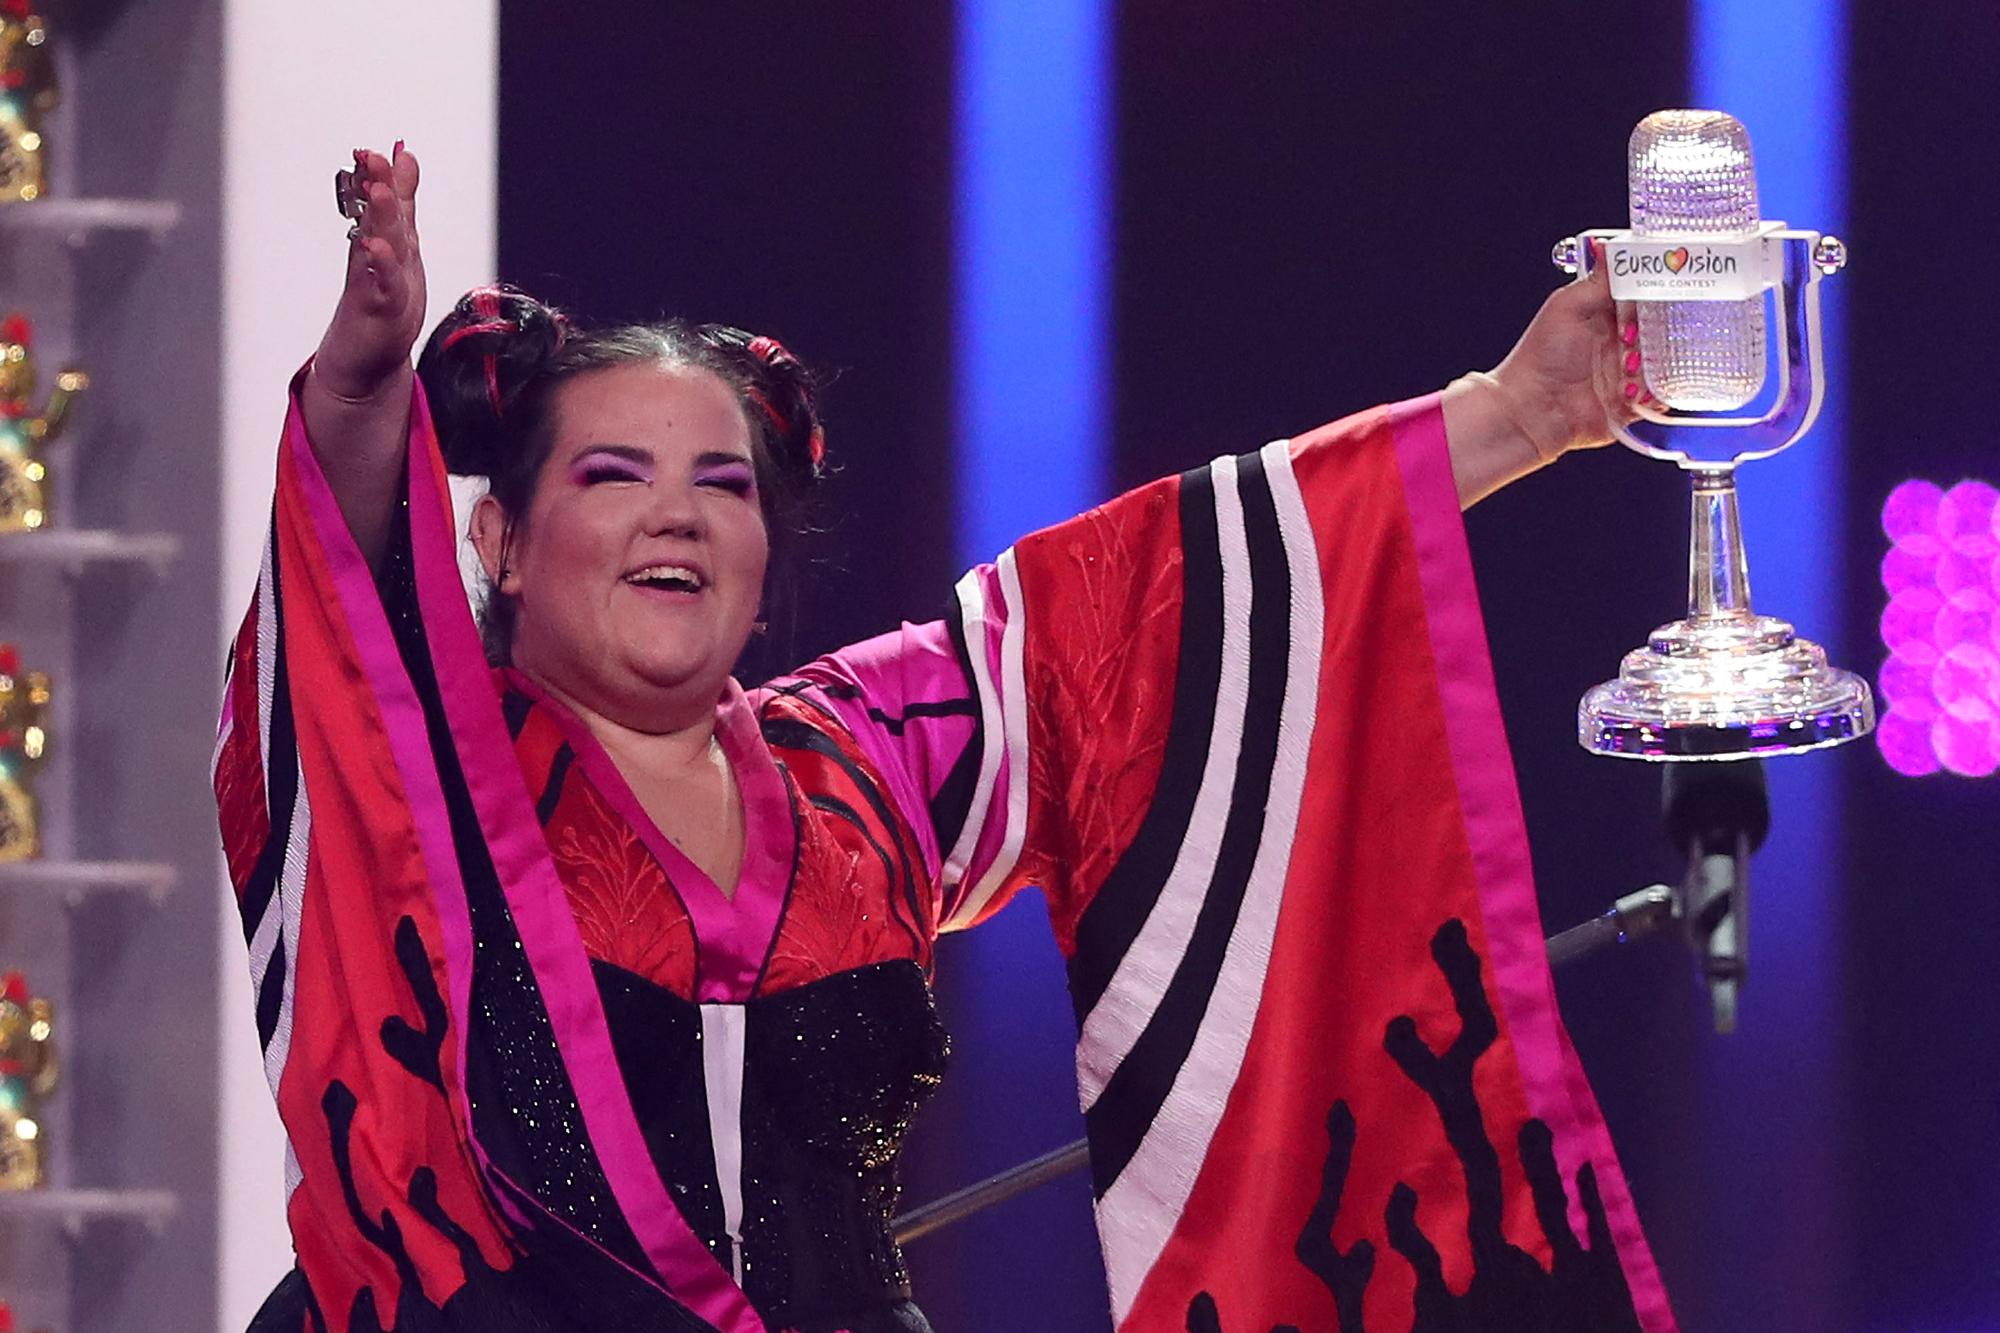 La chanteuse Netta Barzilai qui représente Israël et gagnante de l'Eurovision 2018, à Lisbonne, Portugal, le 12 mai 2018. [NurPhoto via AFP - PEDRO FIUZA]